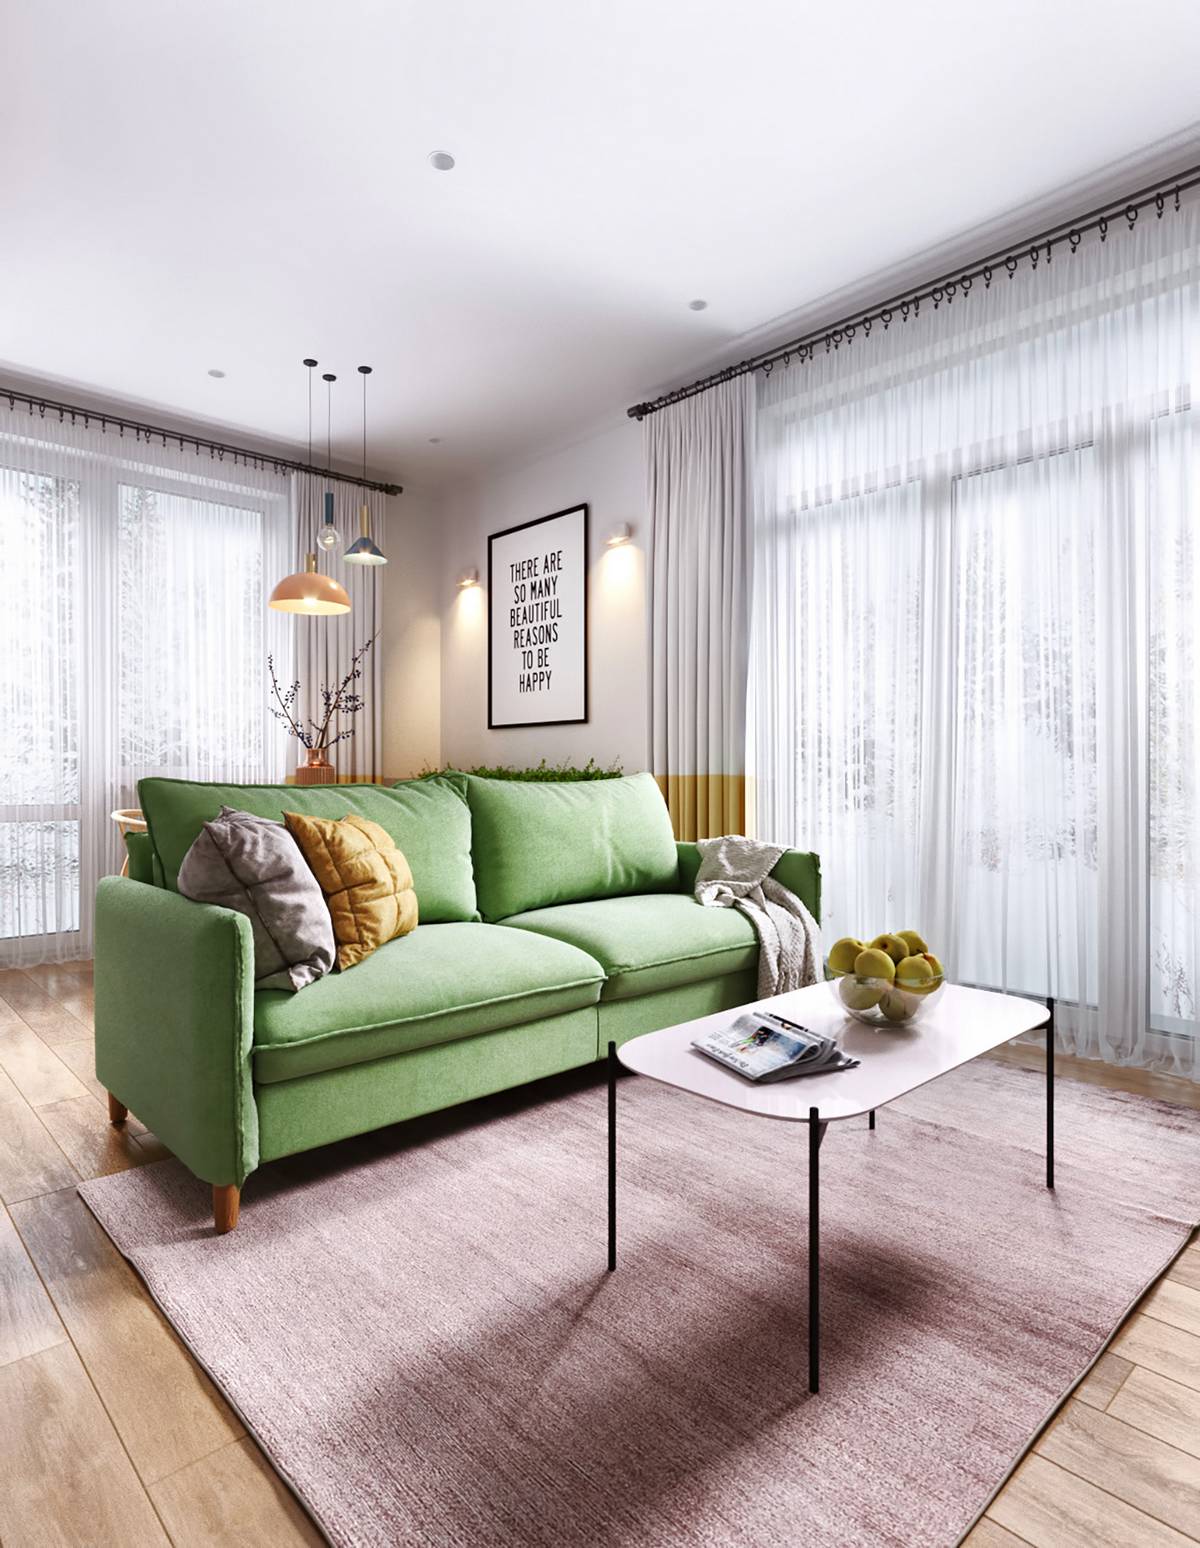 Ghế sofa màu xanh lá cây mang đến sự trẻ trung, vui tươi cho khu vực tiếp khách. Một tấm thảm trải sàn màu hồng nhạt giúp phân vùng phòng khách thật nhẹ nhàng.